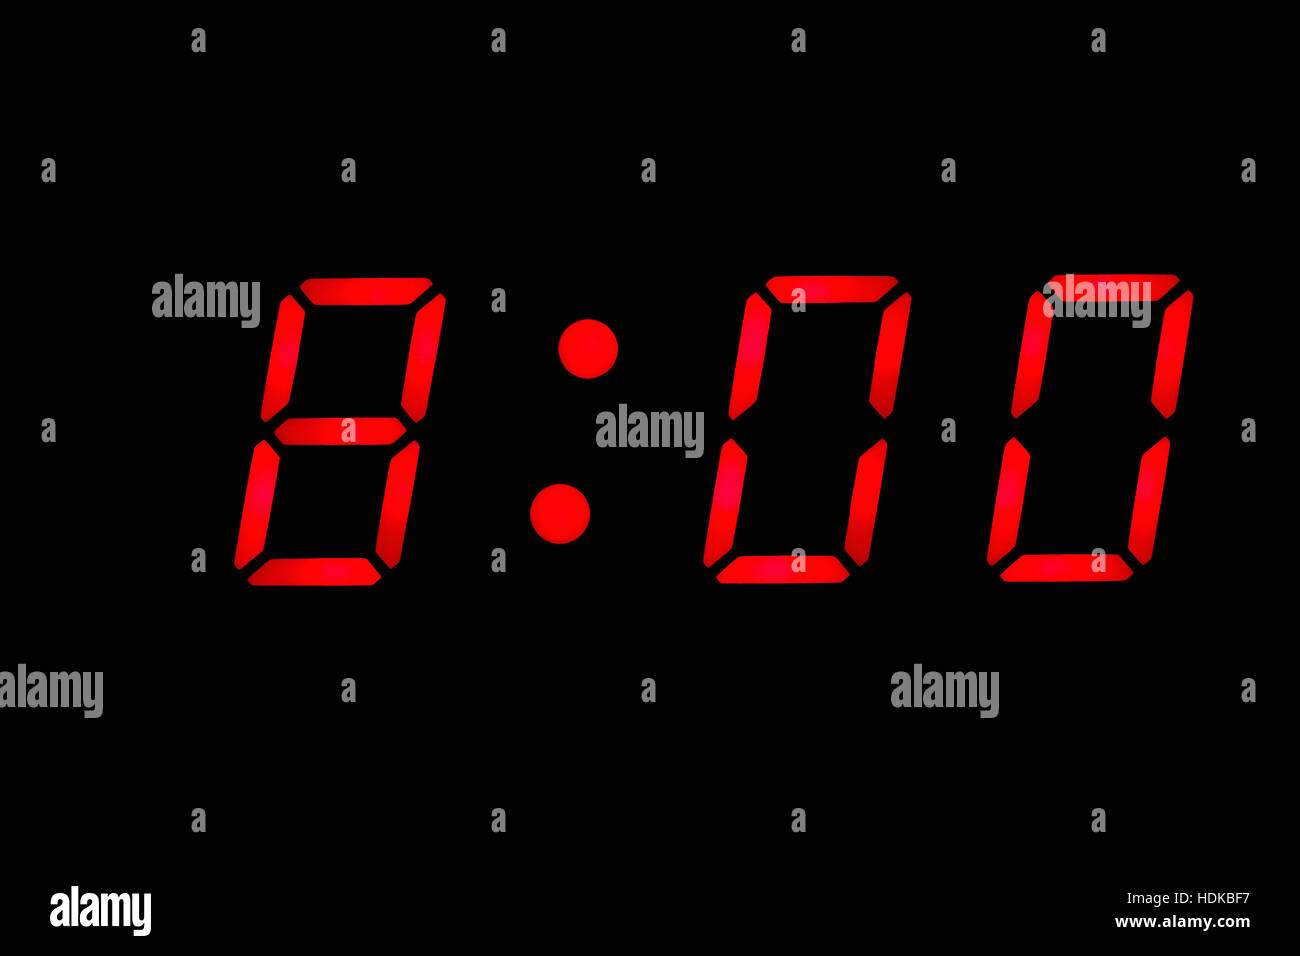 Поставь будильник на 8 15. Электронные часы на черном фоне. Электронные часы с временем 11:10. Электронные часы в спальне Кадр. Миллисекунда в цифровых часах.